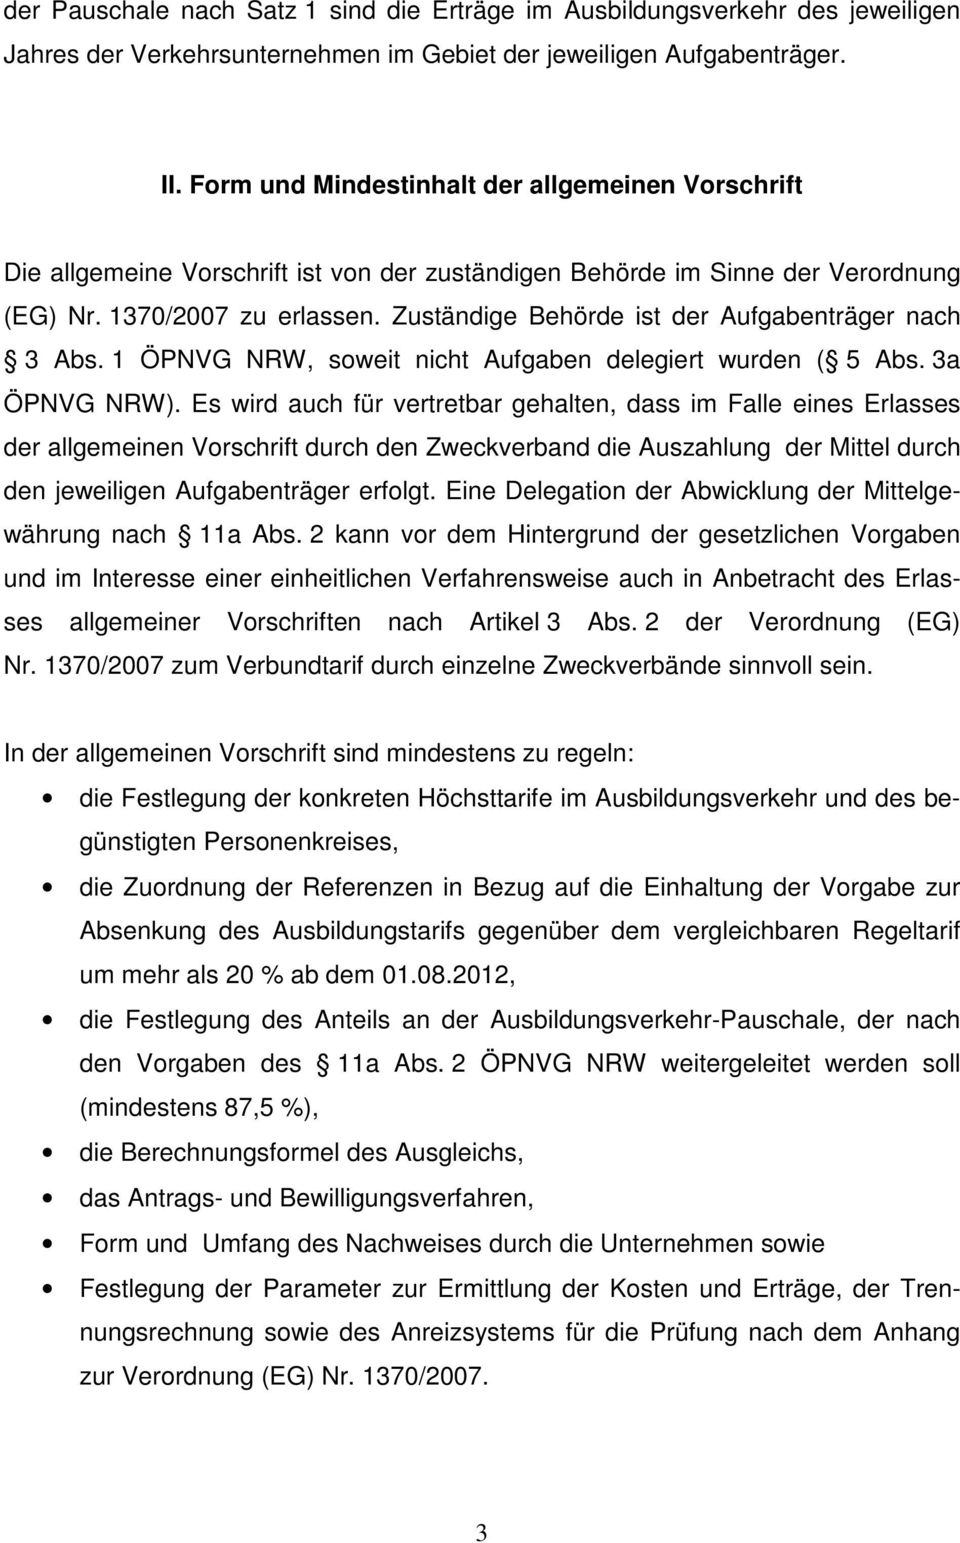 Zuständige Behörde ist der Aufgabenträger nach 3 Abs. 1 ÖPNVG NRW, soweit nicht Aufgaben delegiert wurden ( 5 Abs. 3a ÖPNVG NRW).